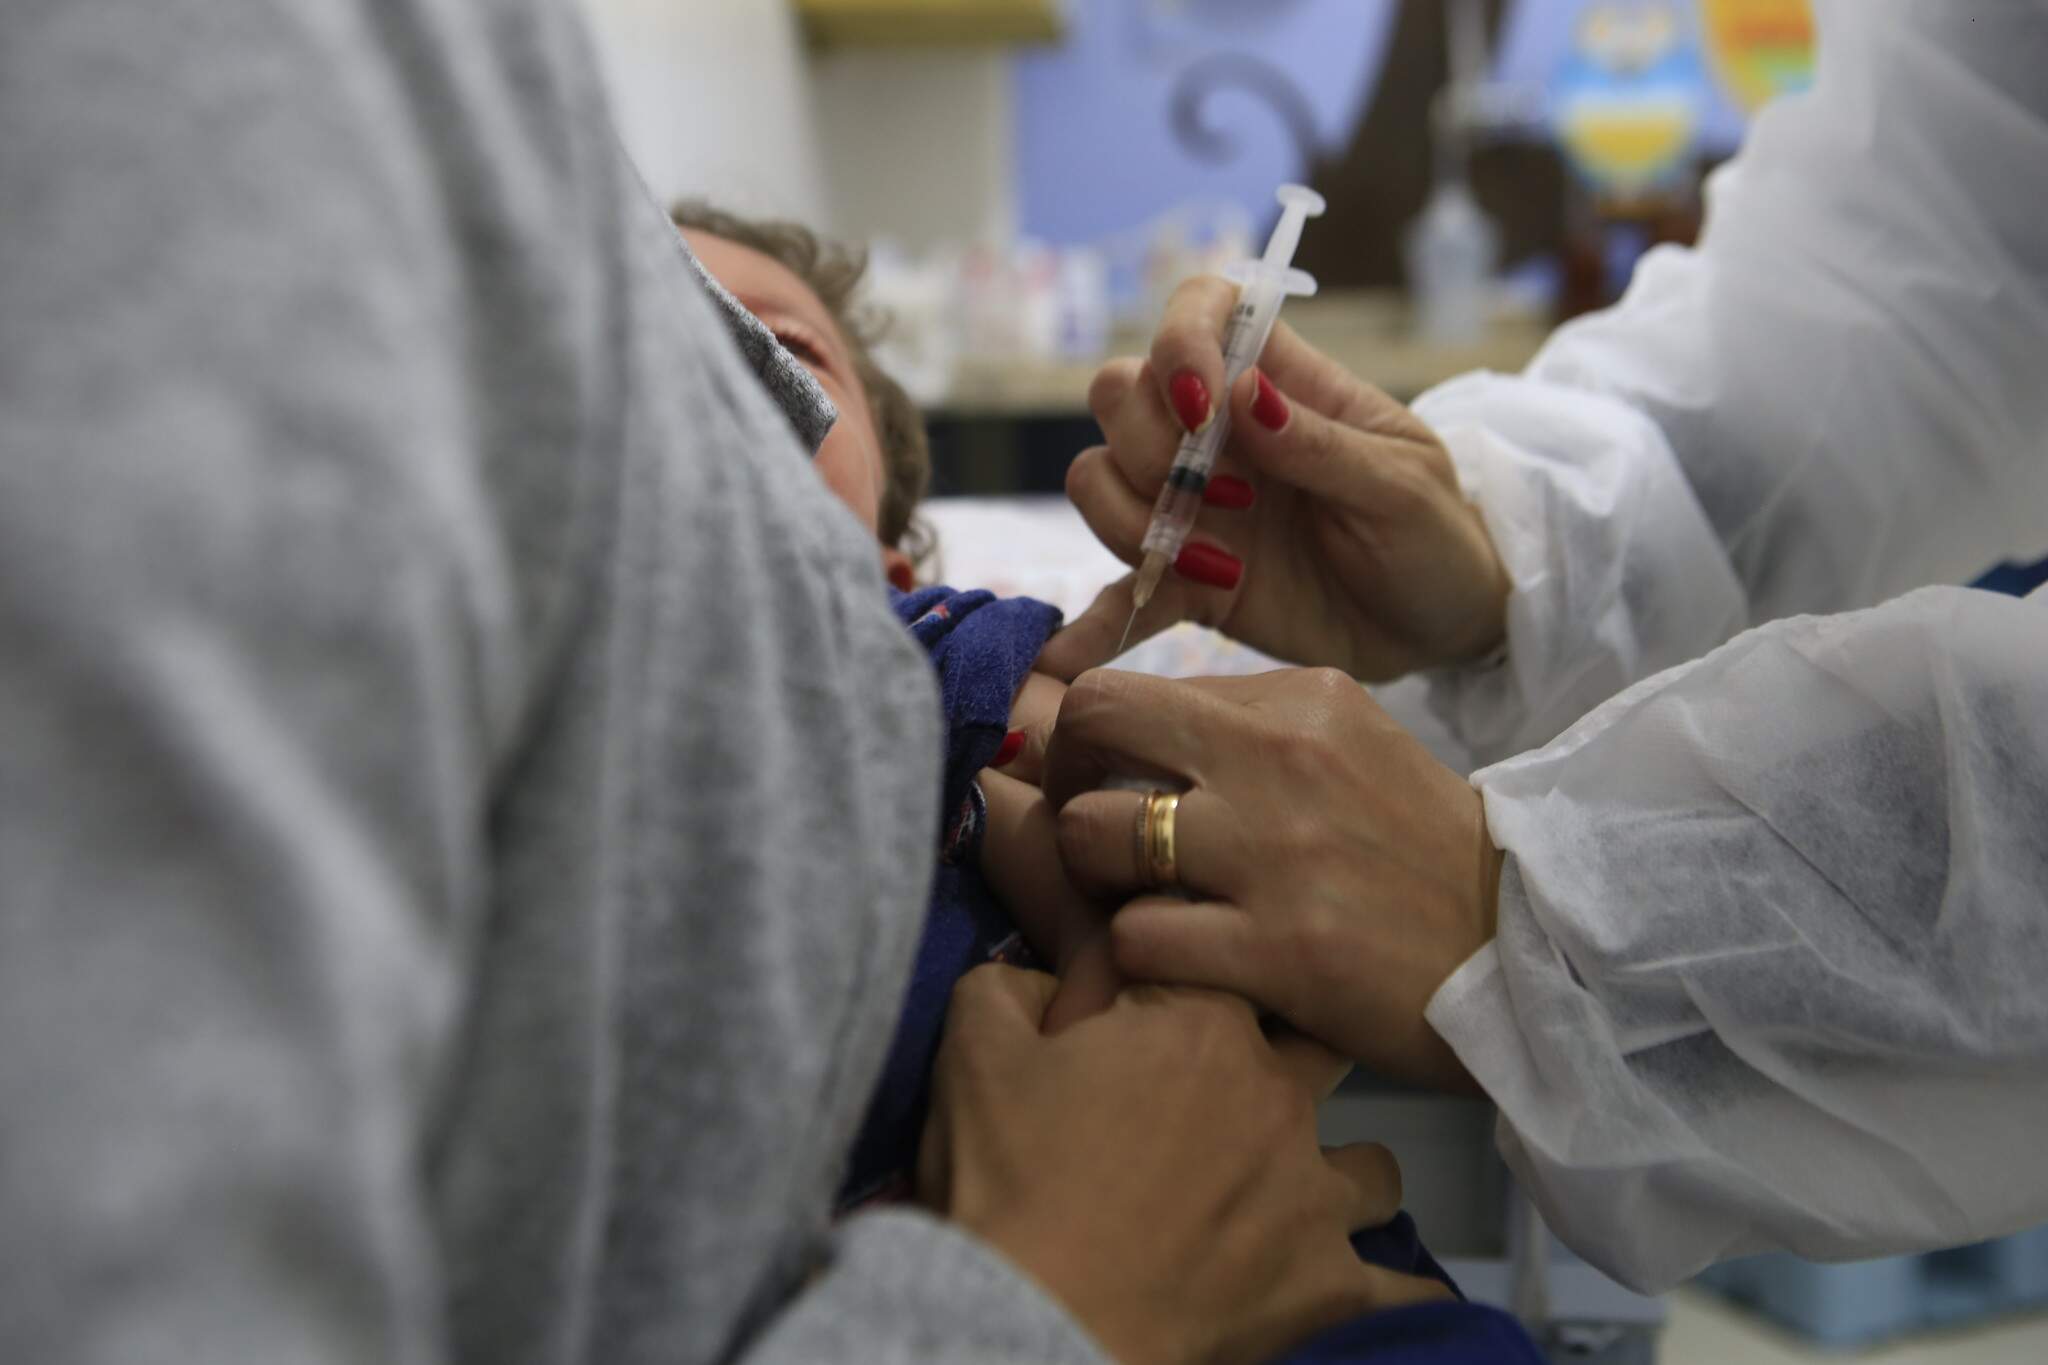 AA vacina tríplice viral protege contra o sarampo, rubéola e caxumba